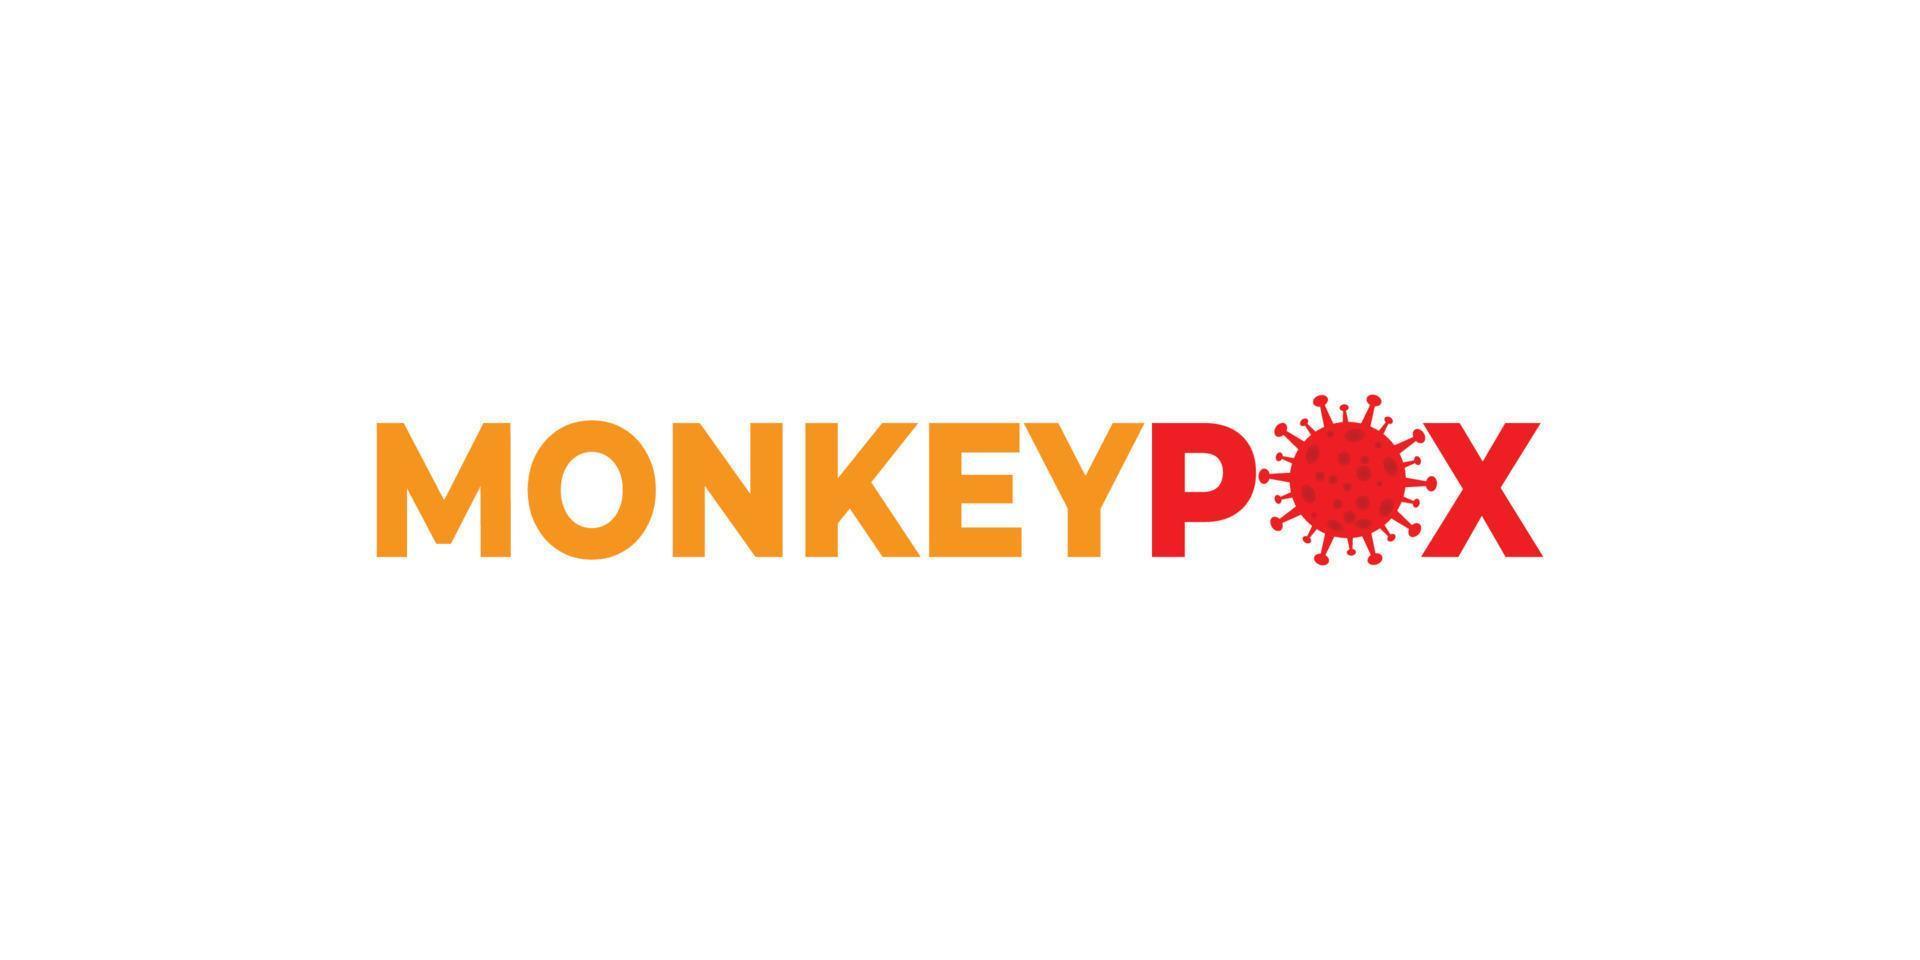 monkeypox logotyp namn på isolerade vit bakgrund. Monkeypox virus, virusutbrott pandemi logotyp design. mpxv virus, infektionssjukdom diagnos medicinsk koncept vektor design och illustration.